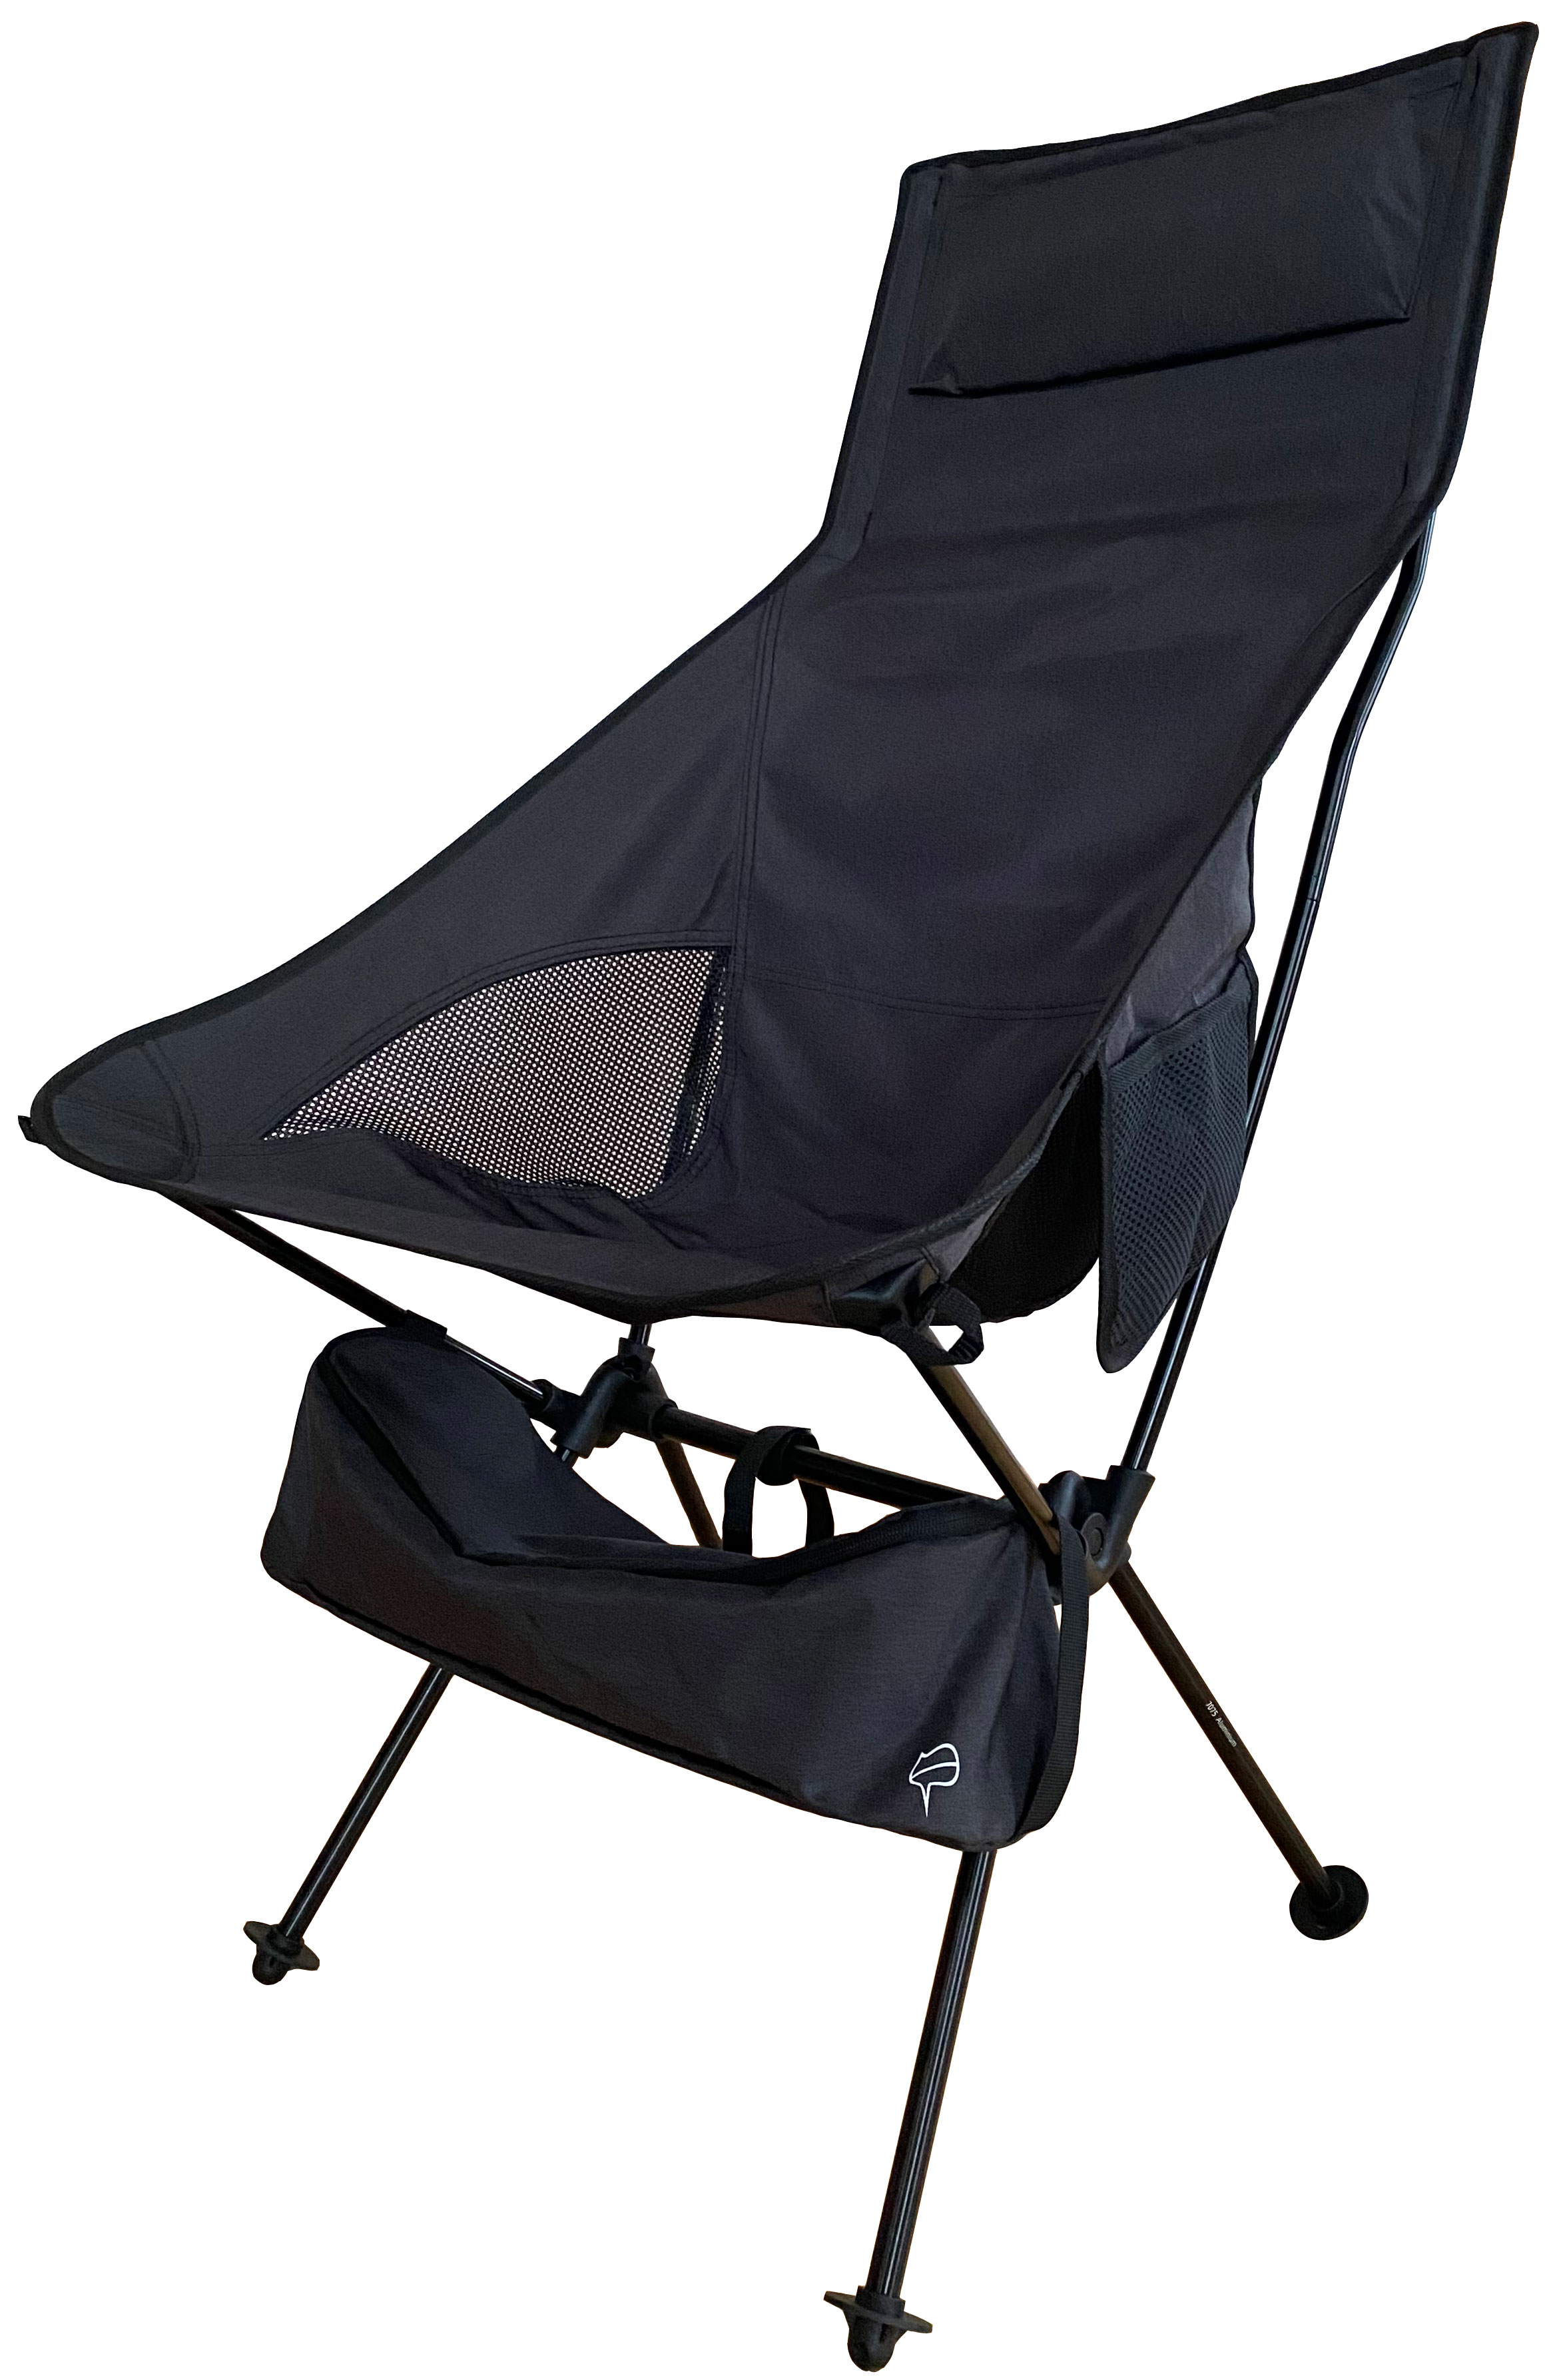 アウトドアチェア コンパクト 軽量 キャンプ椅子 ハイバック : po-002 